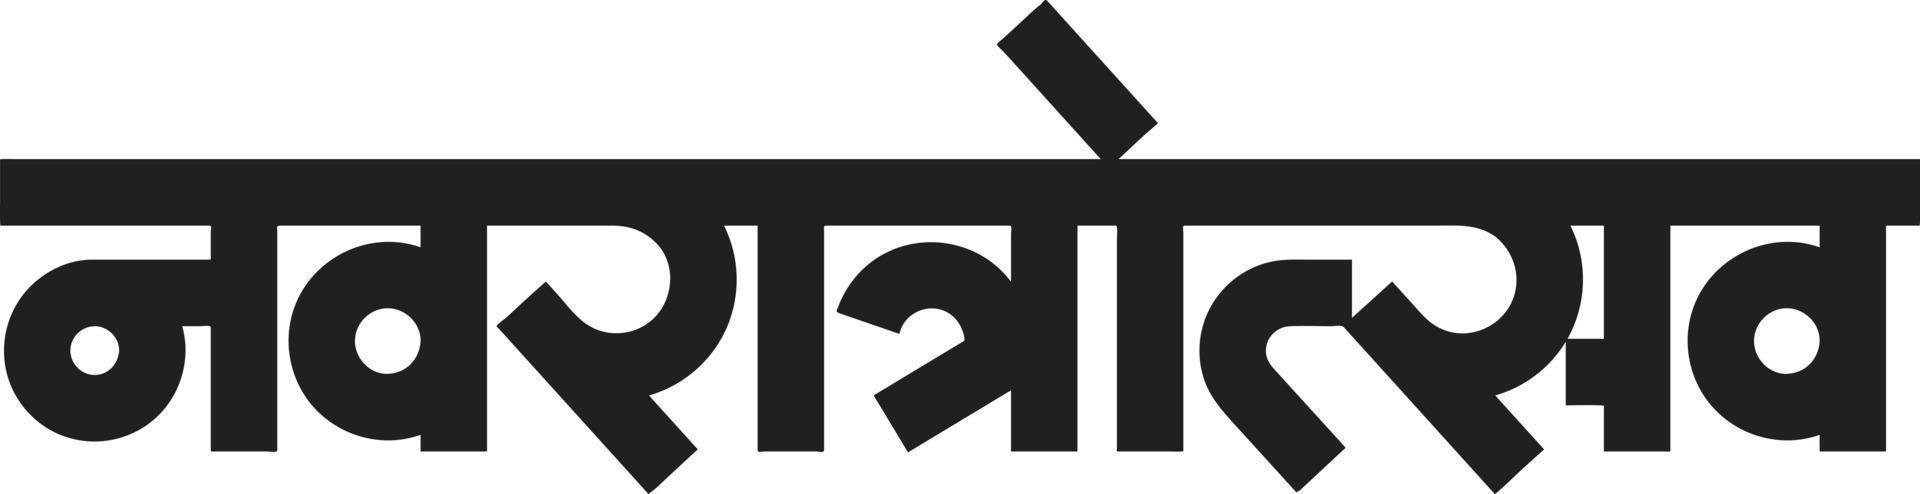 'navratrostav' heeft geschreven in het Hindi en Marathi. 'navratrostav' betekent negen-nachten festival van de moedergodin vector